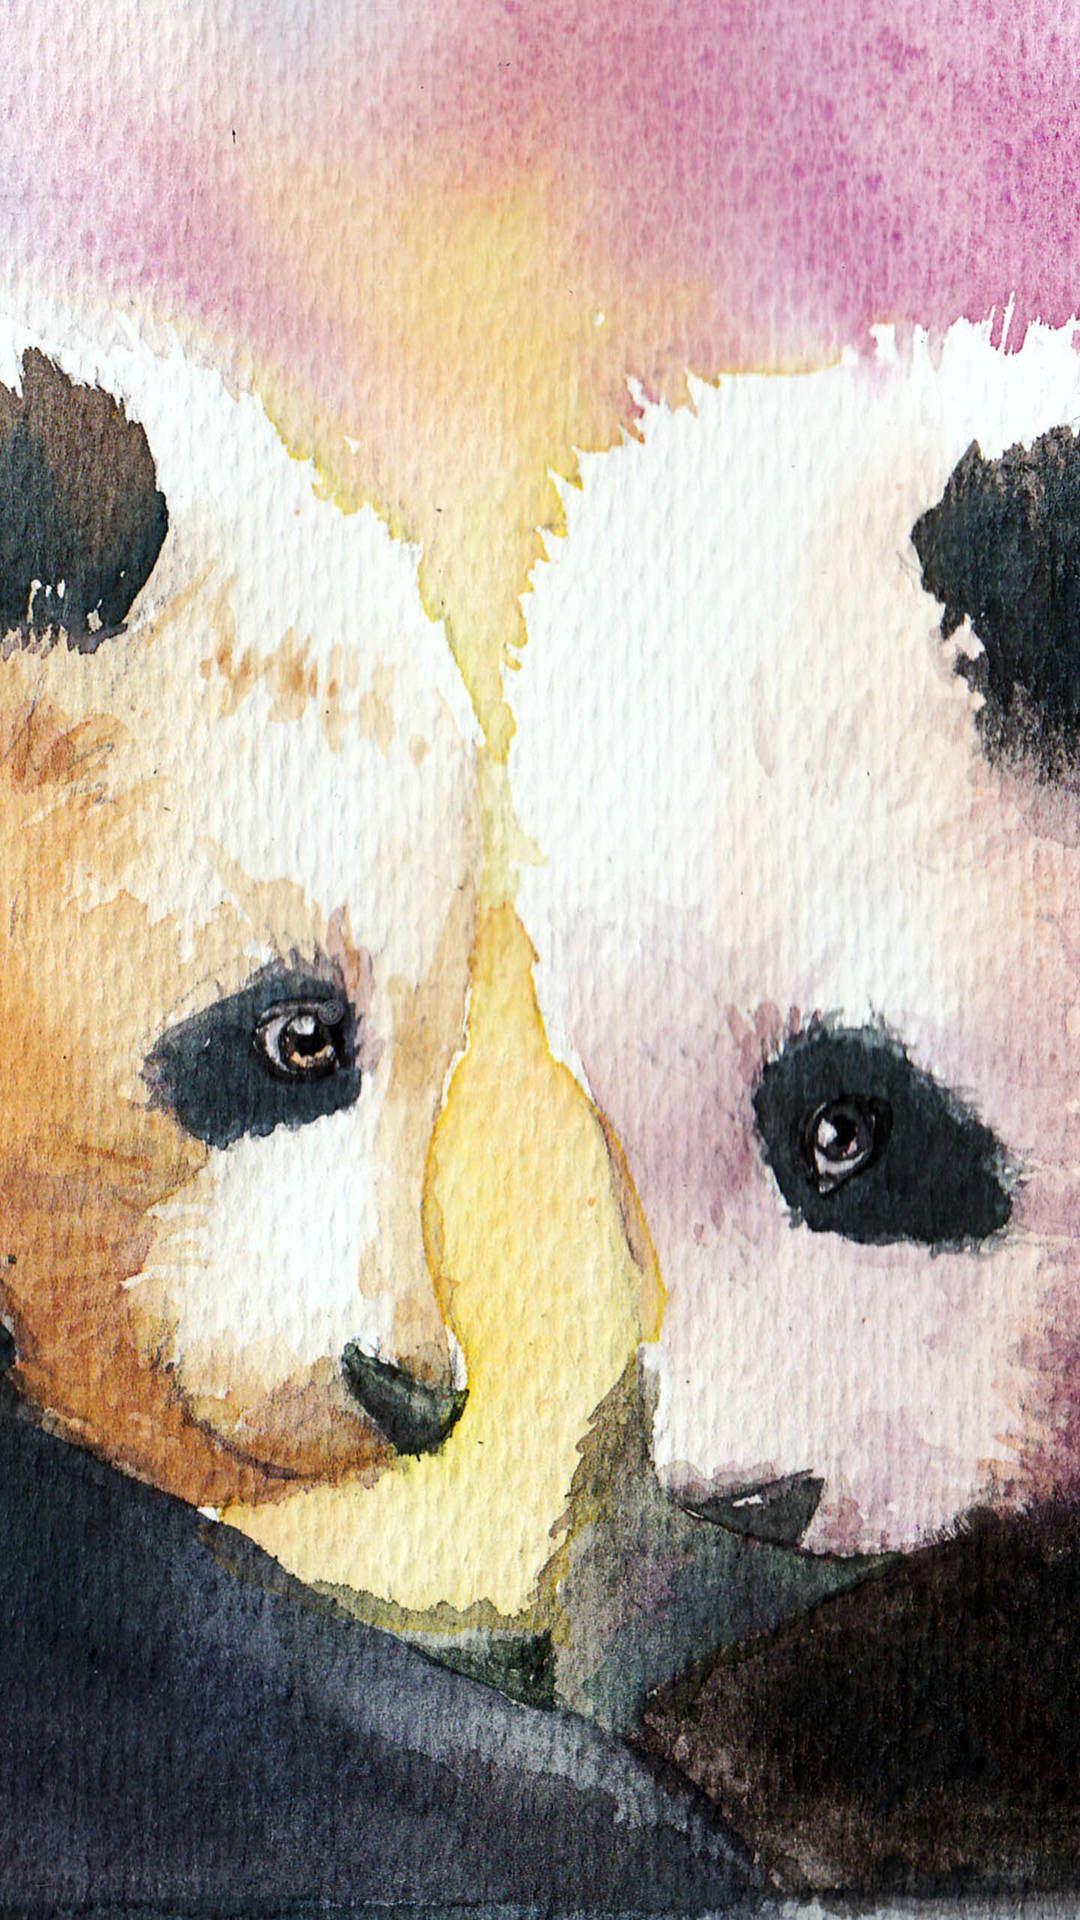 Wallpaper Hp Lucu Panda Cute Panda Wallpaper Hp Lucu Panda 